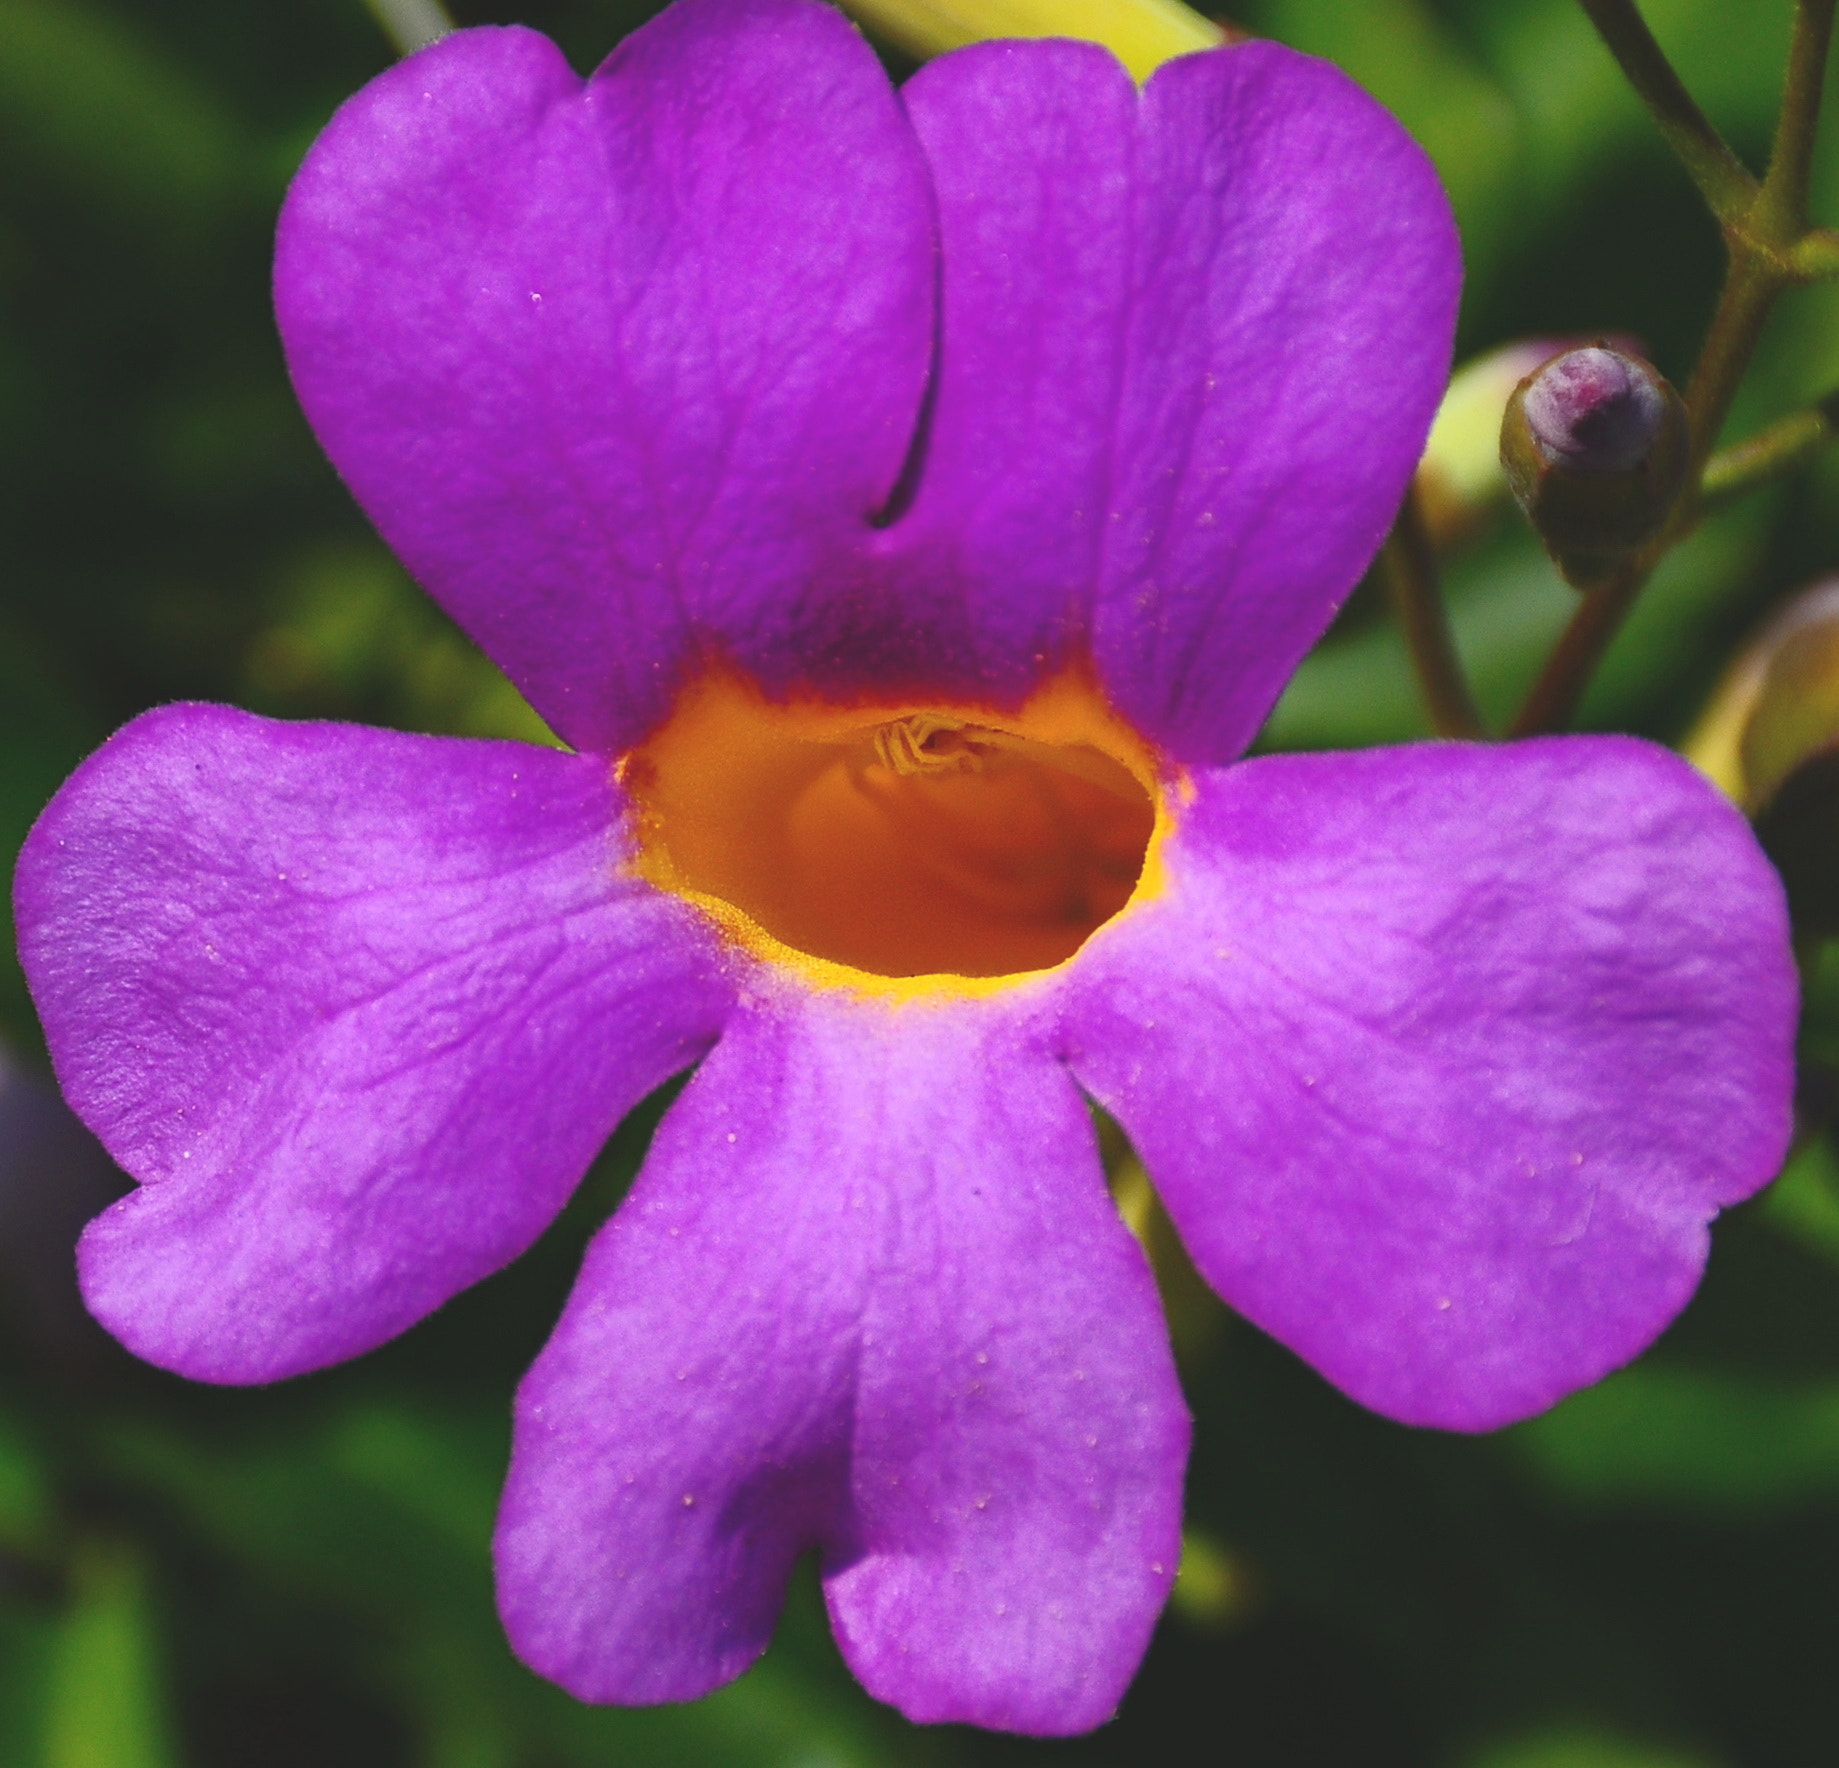 Nikon D90 + Nikon AF-S DX Nikkor 18-140mm F3.5-5.6G ED VR sample photo. Nice violet flower four photography